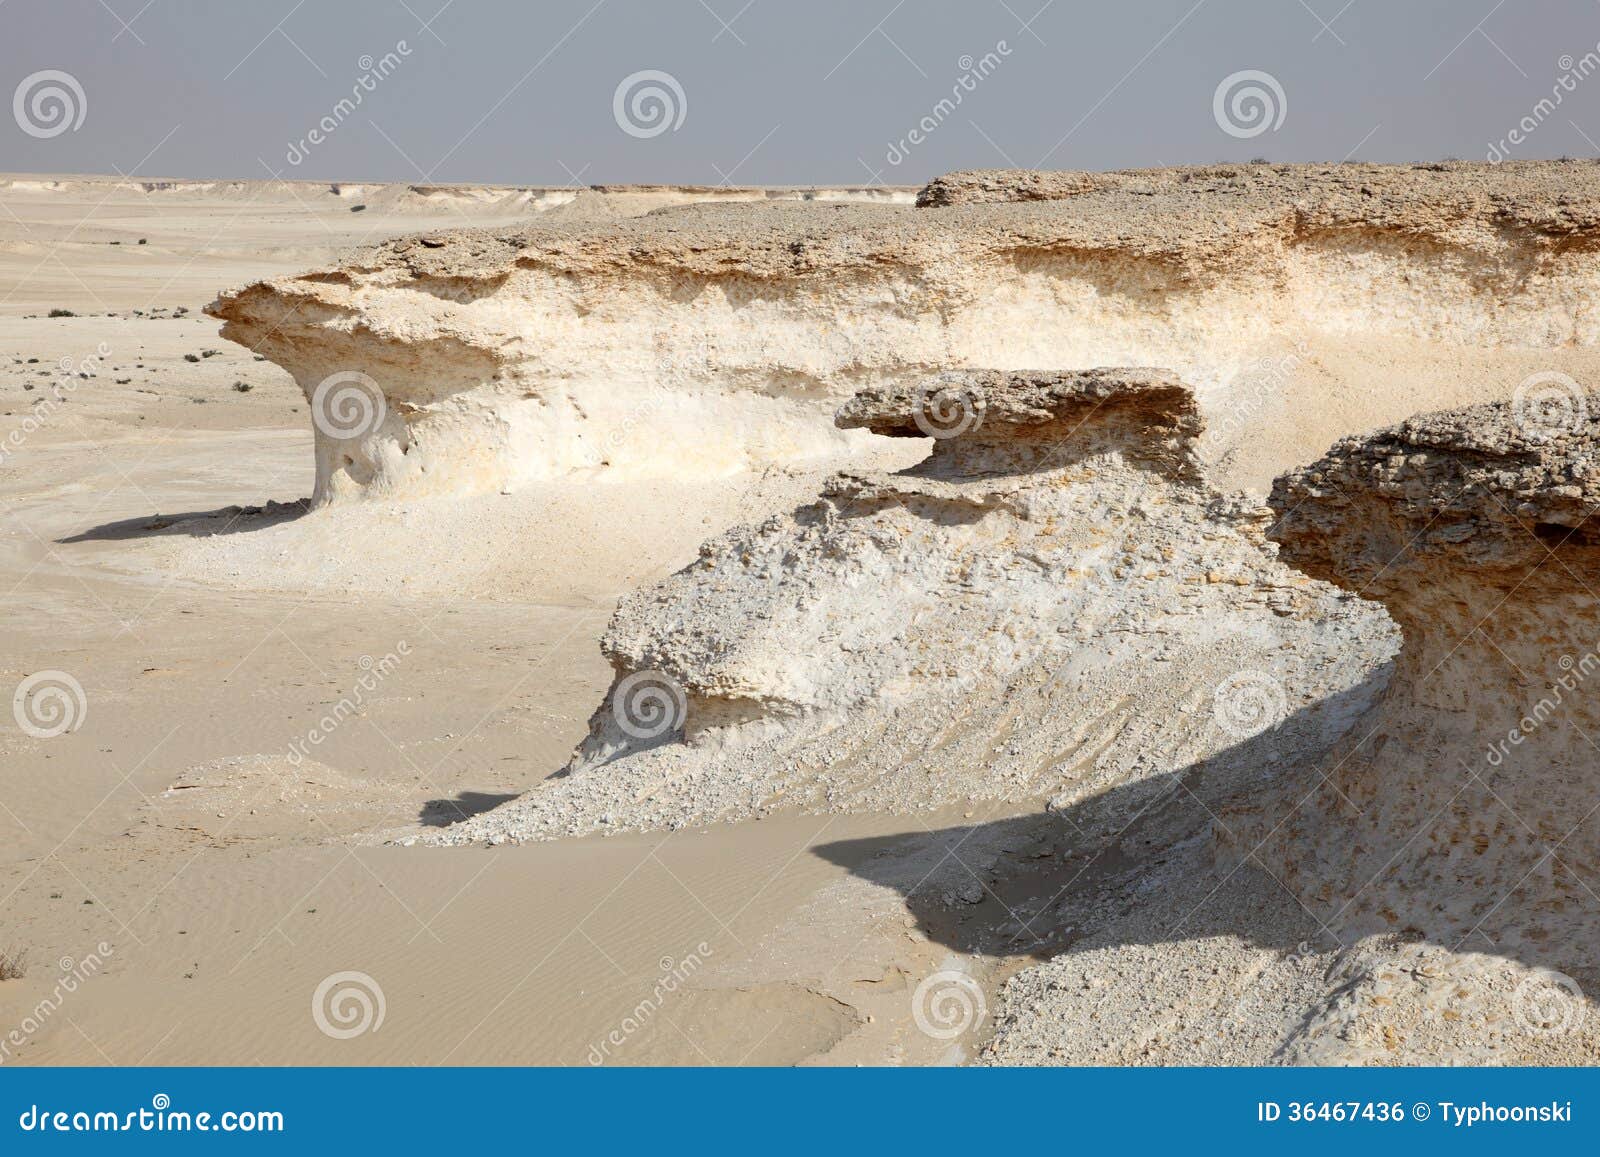 desert landscape Middle East Desert Landscapes | 1300 x 957